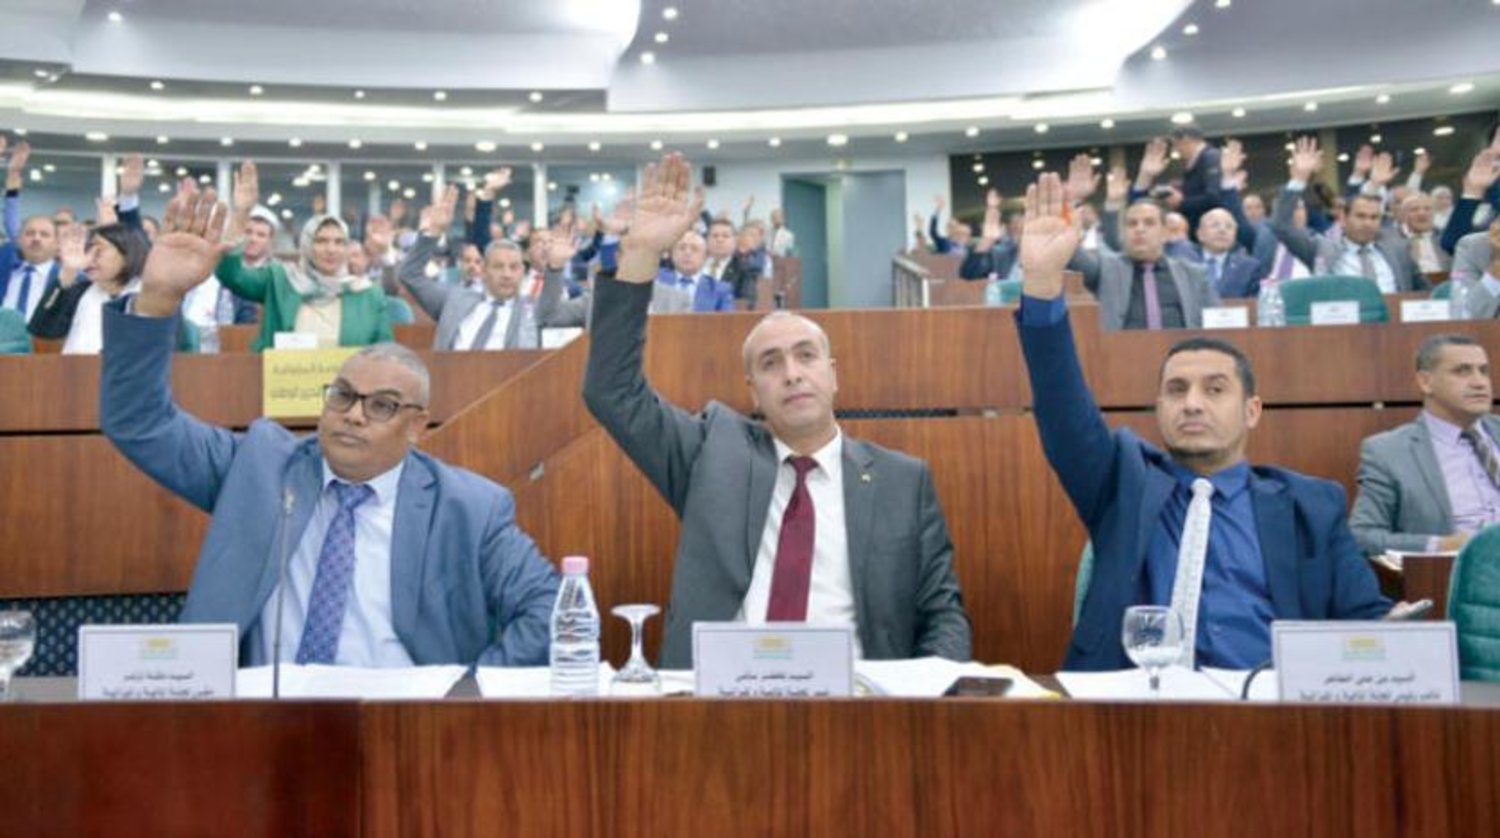 Bütçe yasası oylama oturumunun bir parçası (Cezayir Ulusal Halk Meclisi Basın Bürosu)